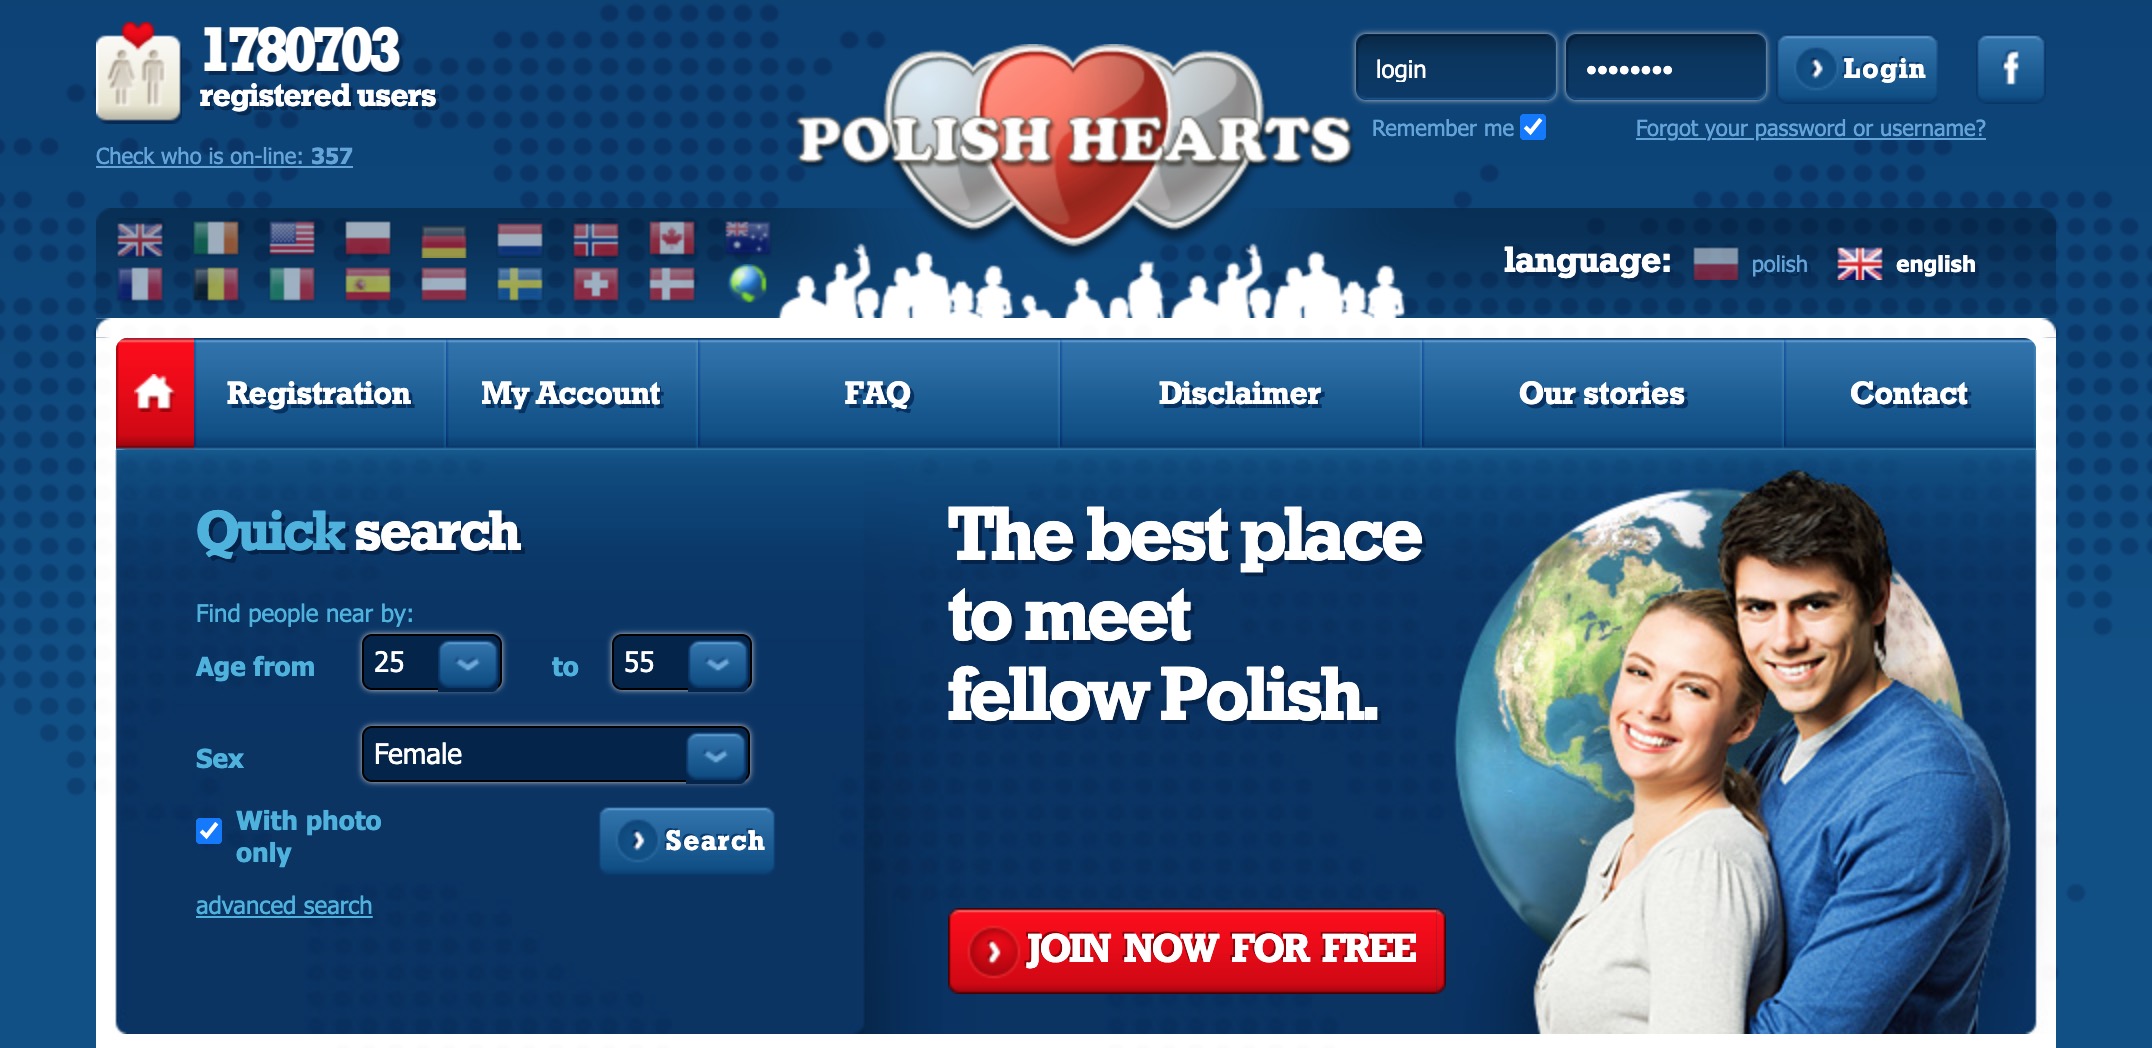 PolishHearts main page